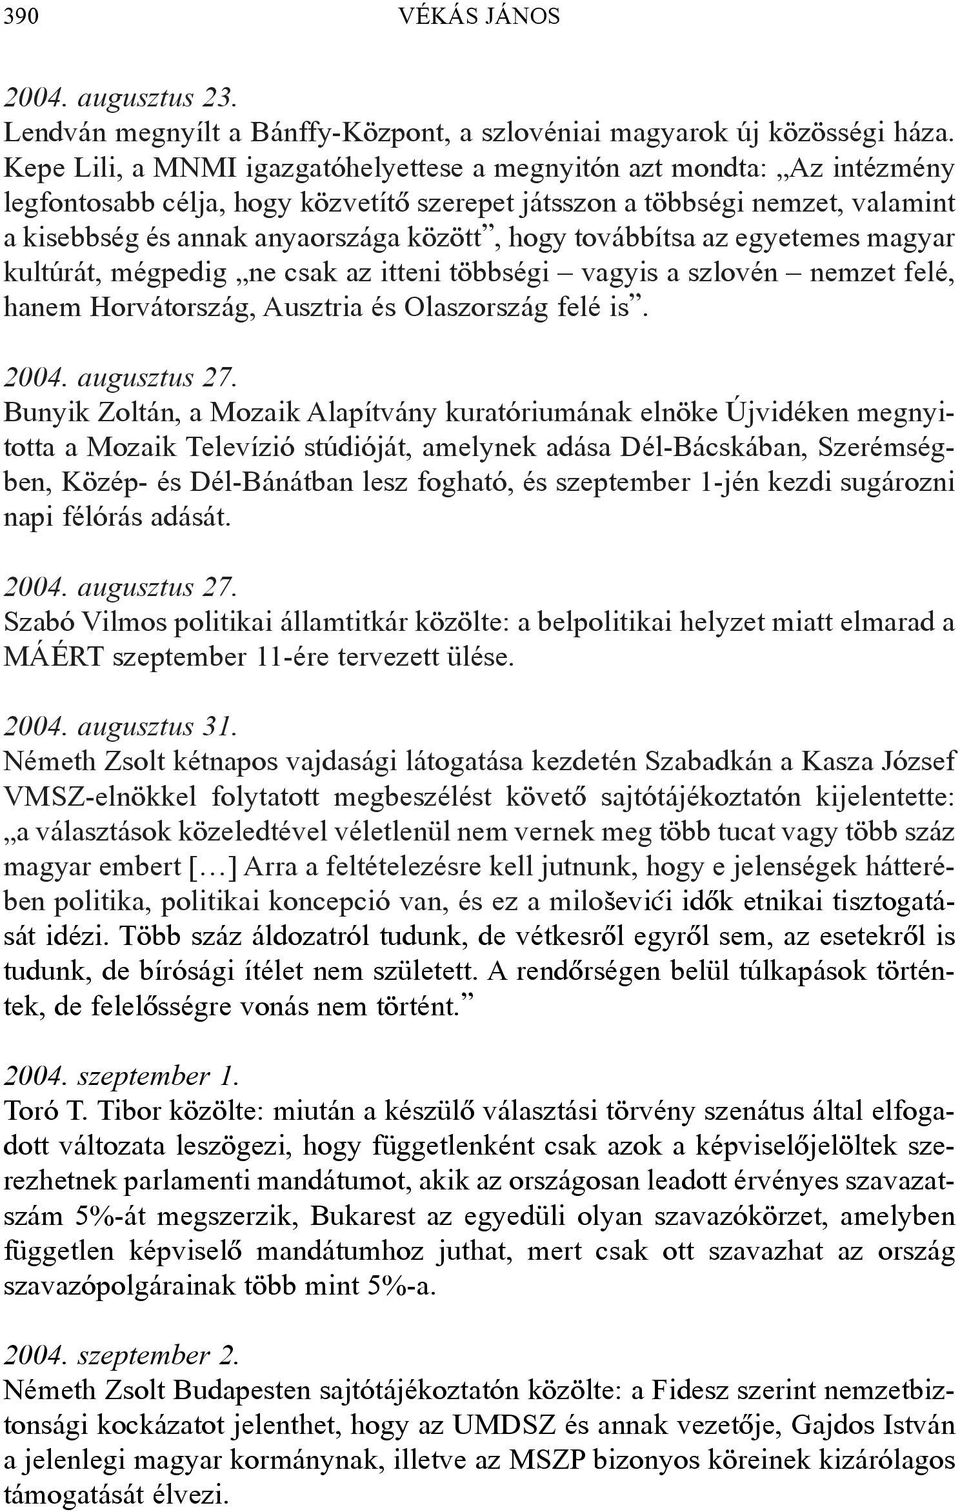 hogy továbbítsa az egyetemes magyar kultúrát, mégpedig ne csak az itteni többségi vagyis a szlovén nemzet felé, hanem Horvátország, Ausztria és Olaszország felé is. 2004. augusztus 27.